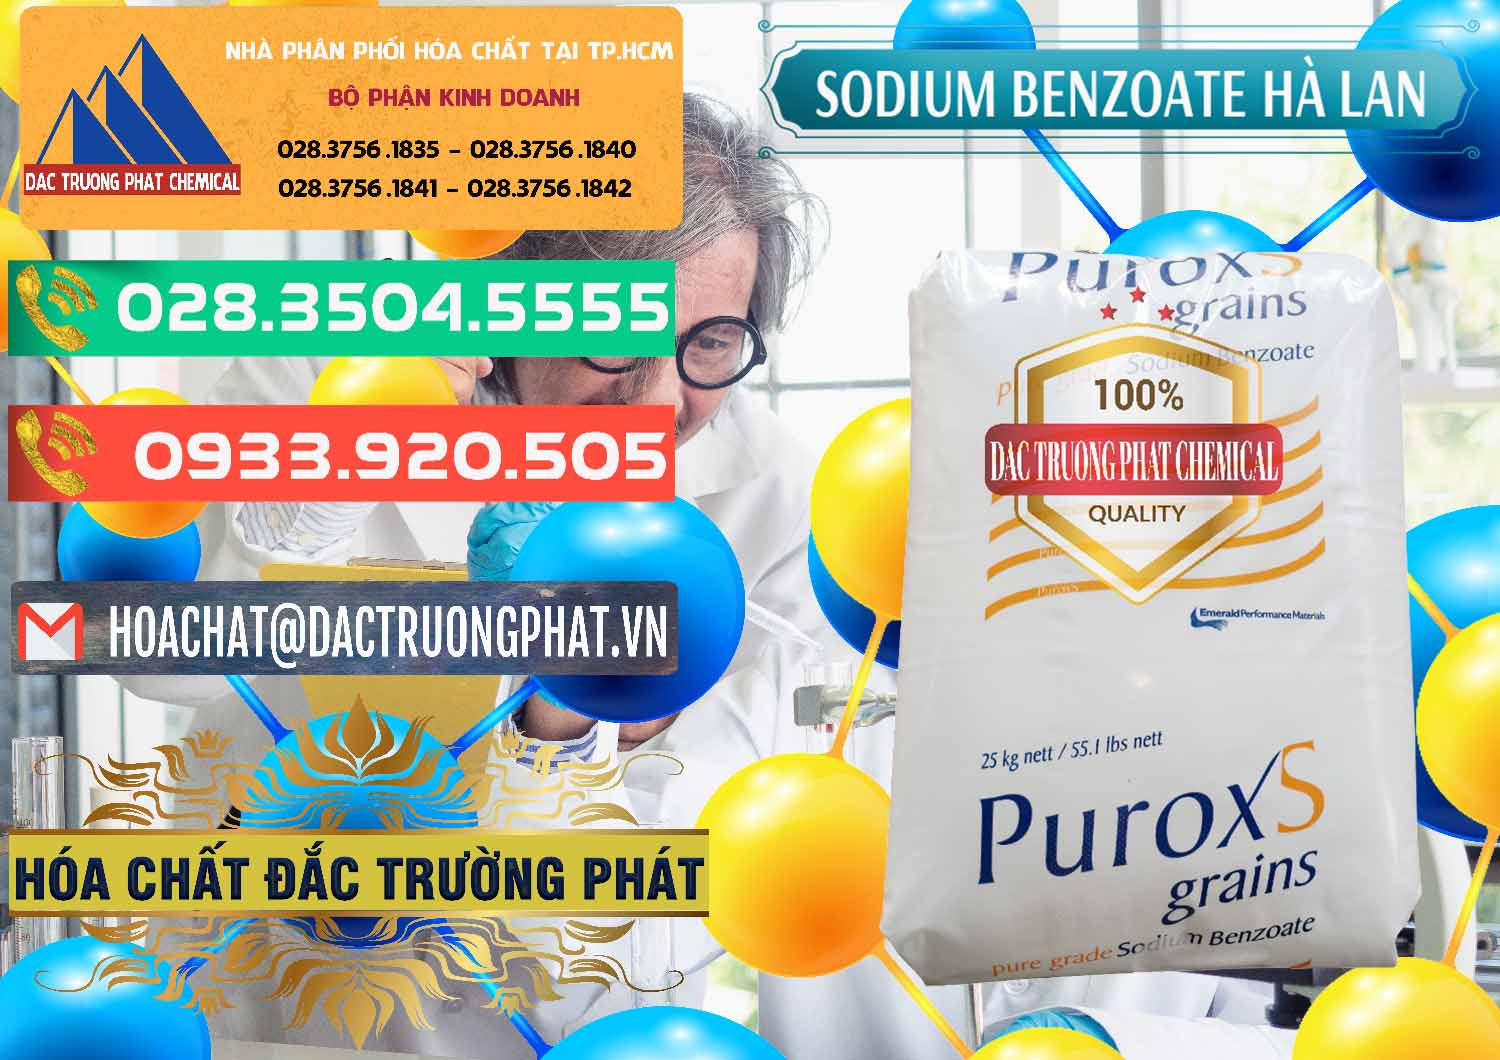 Đơn vị chuyên bán - cung cấp Sodium Benzoate - Mốc Bột Puroxs Hà Lan Netherlands - 0467 - Nơi cung cấp - kinh doanh hóa chất tại TP.HCM - congtyhoachat.com.vn